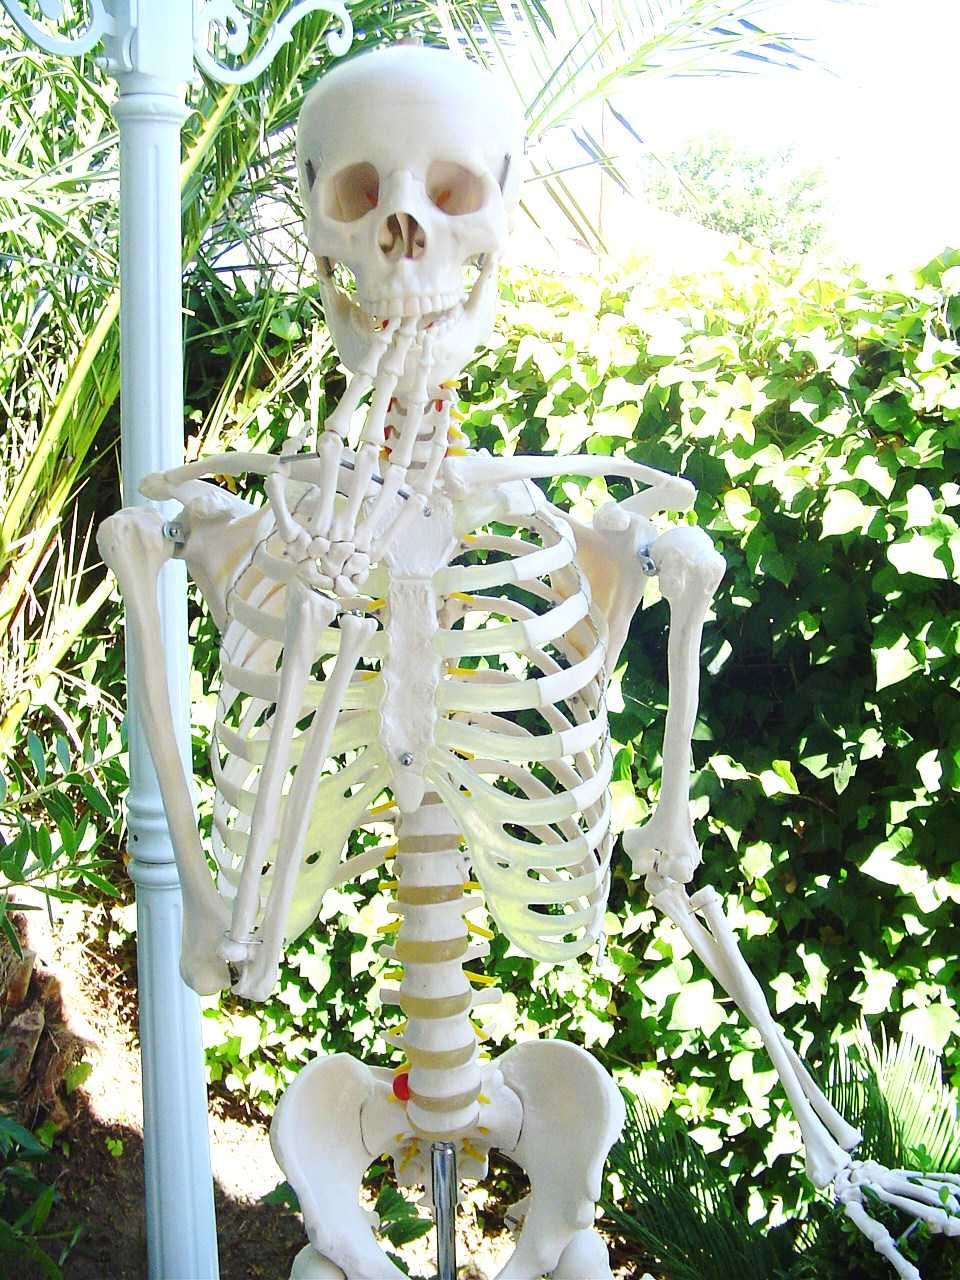 Esqueleto com tripé - Novo